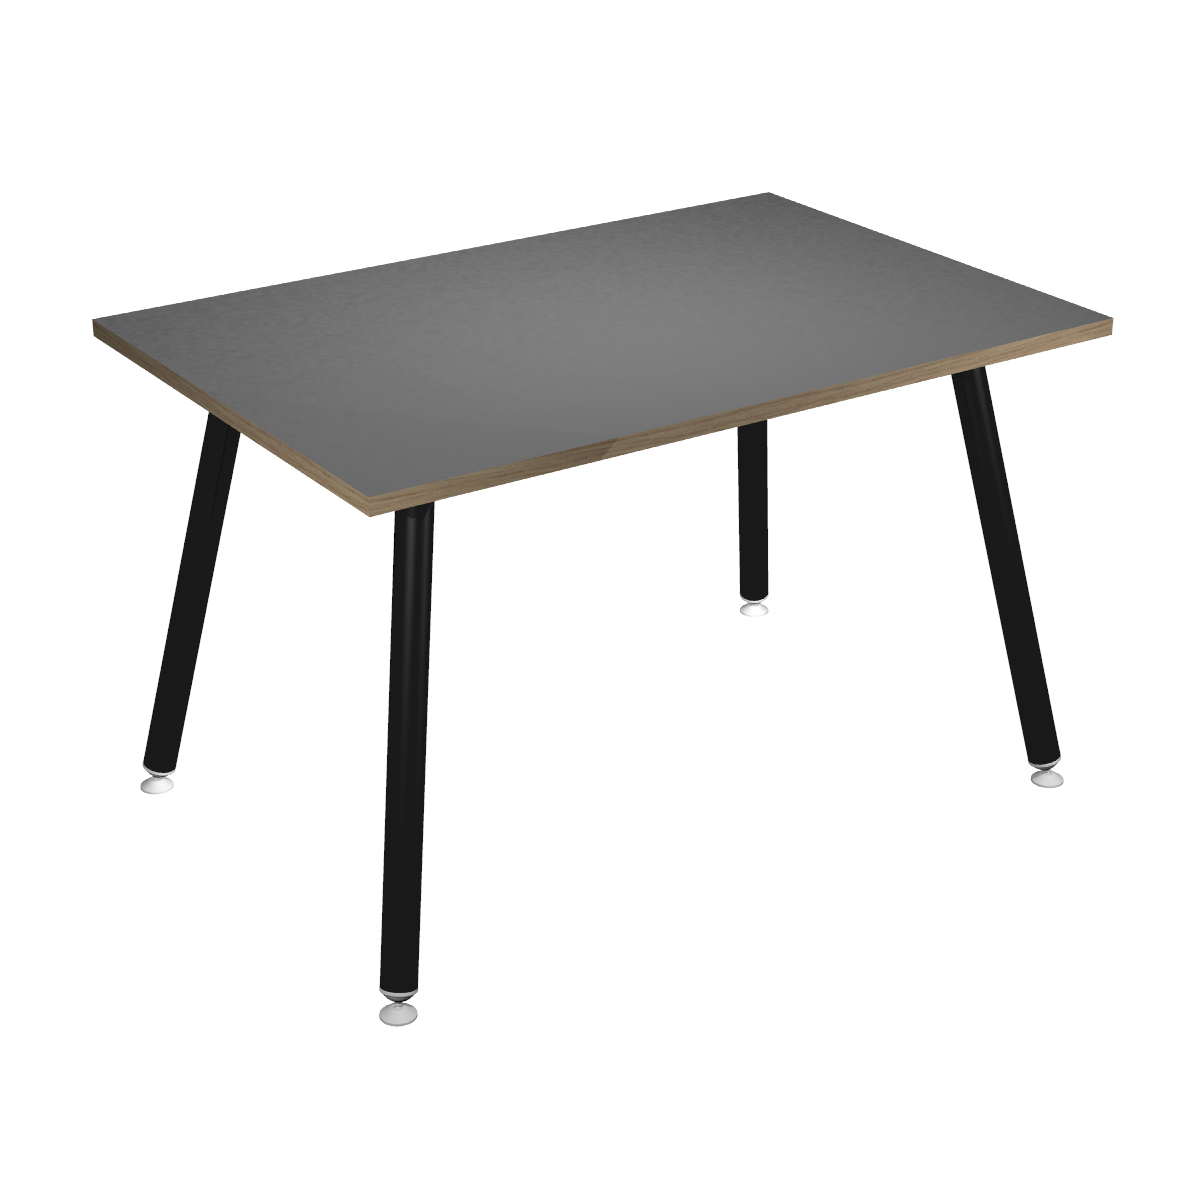 Table haute LEONARDO - 120 x 80 x 105 cm - Pieds métal noirs - Anthracite chants chêne